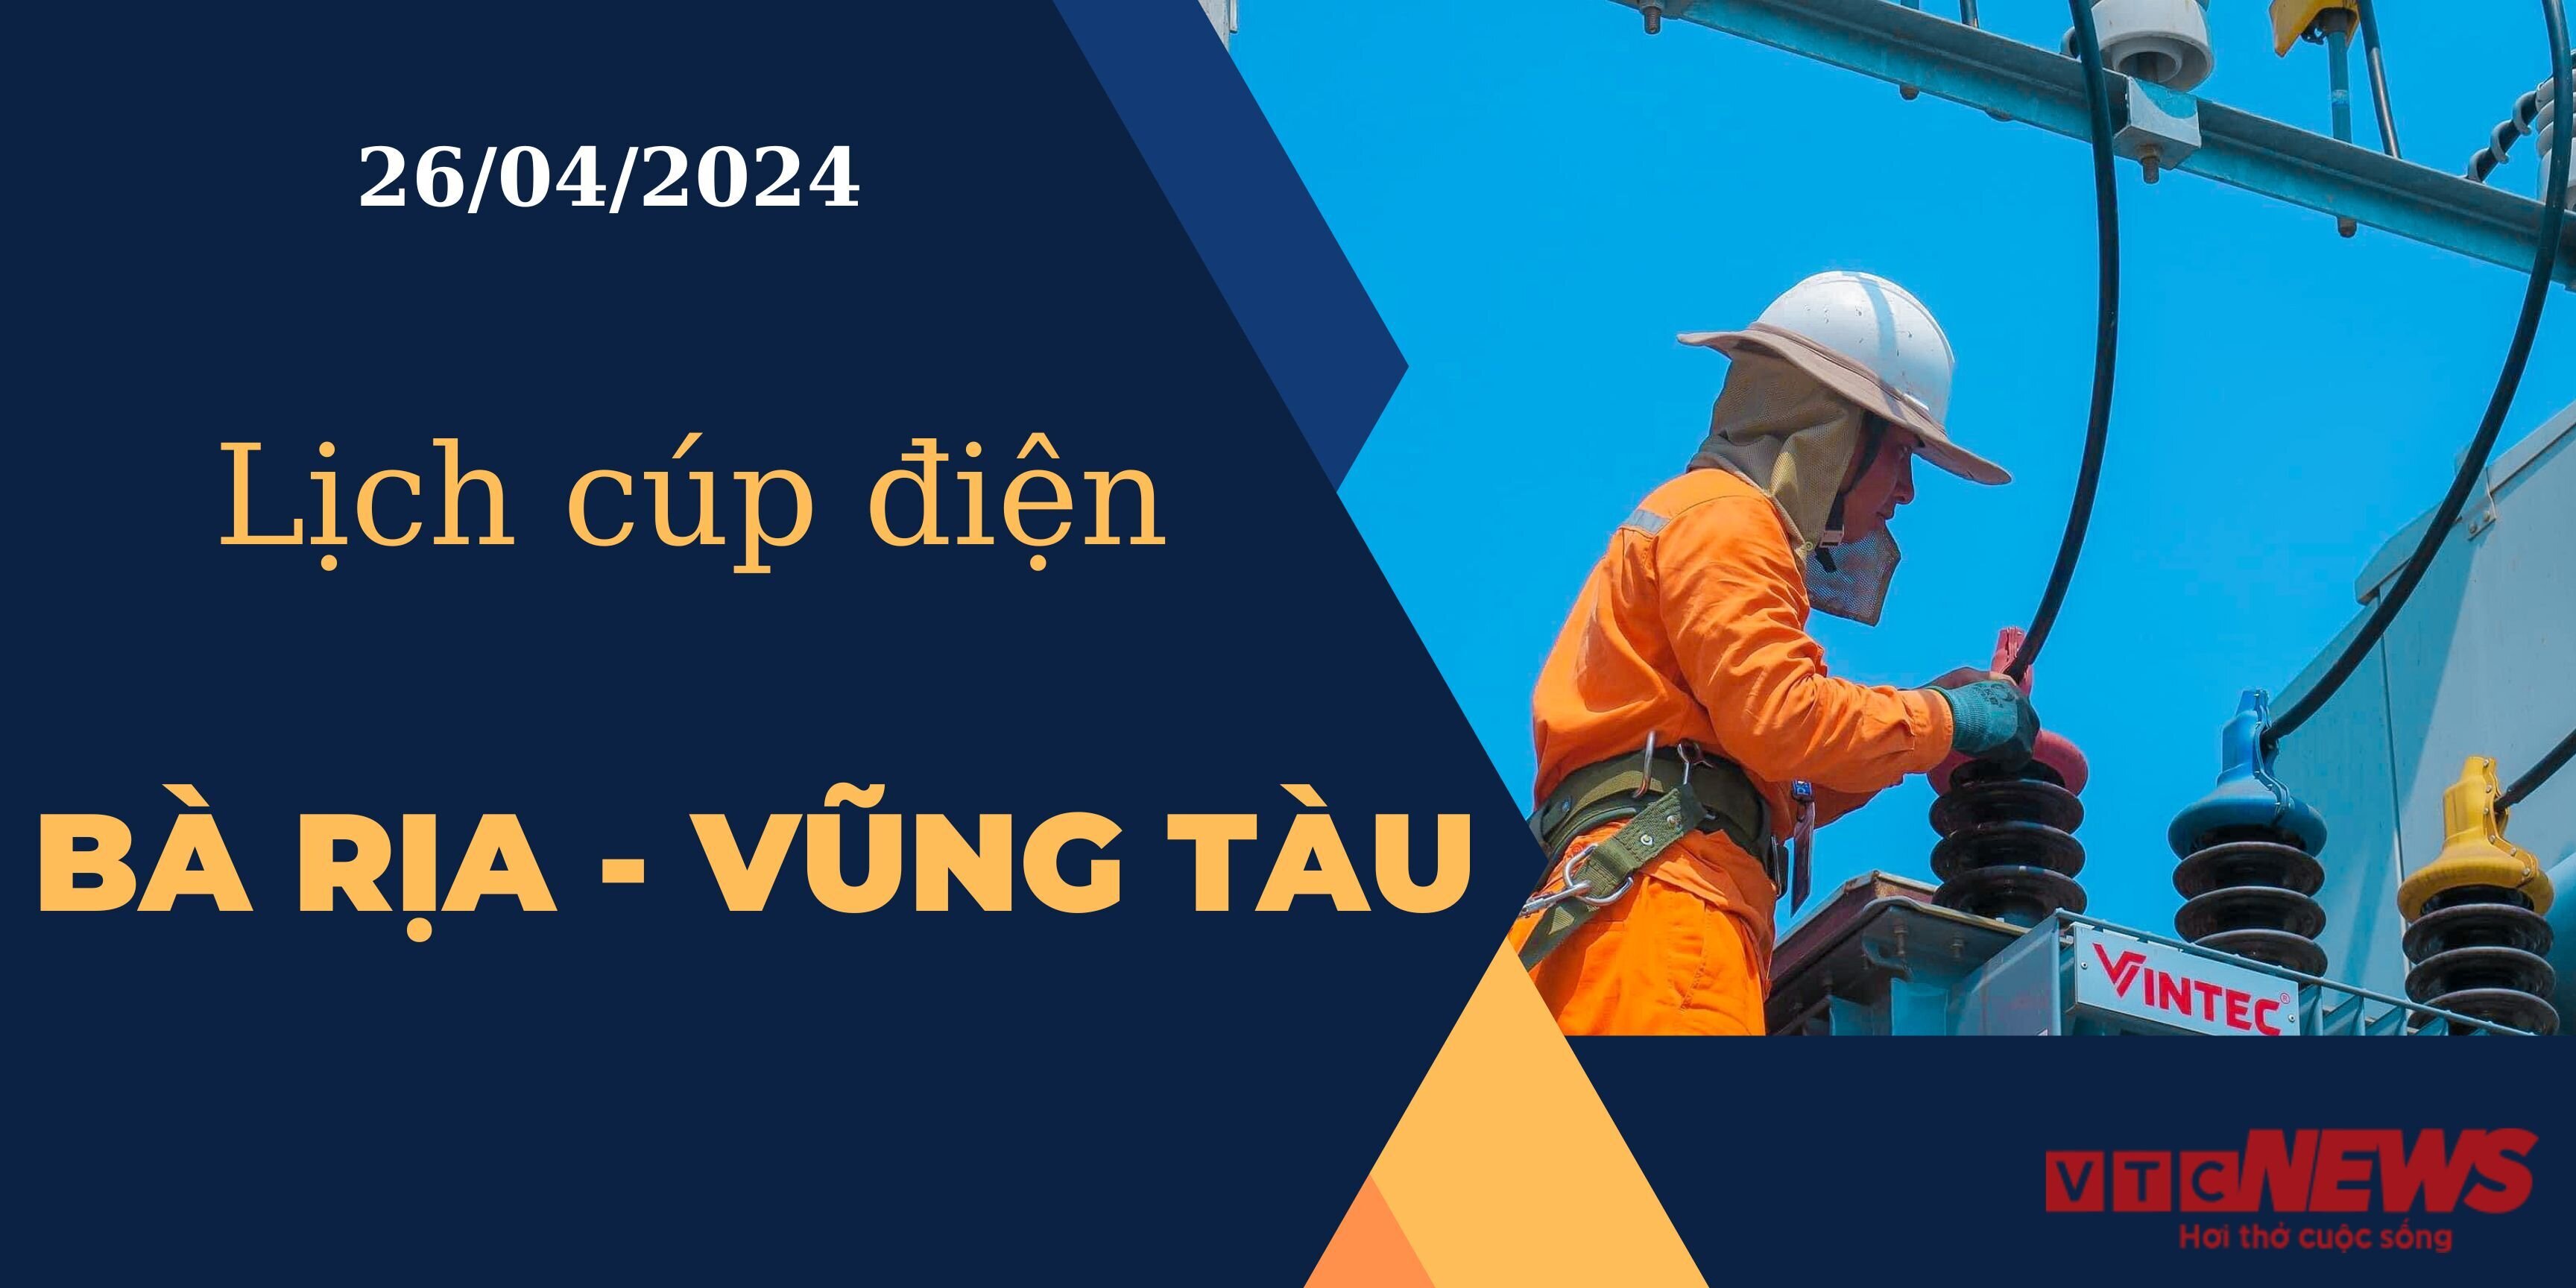 Lịch cúp điện hôm nay ngày 26/04/2024 tại Bà Rịa - Vũng Tàu